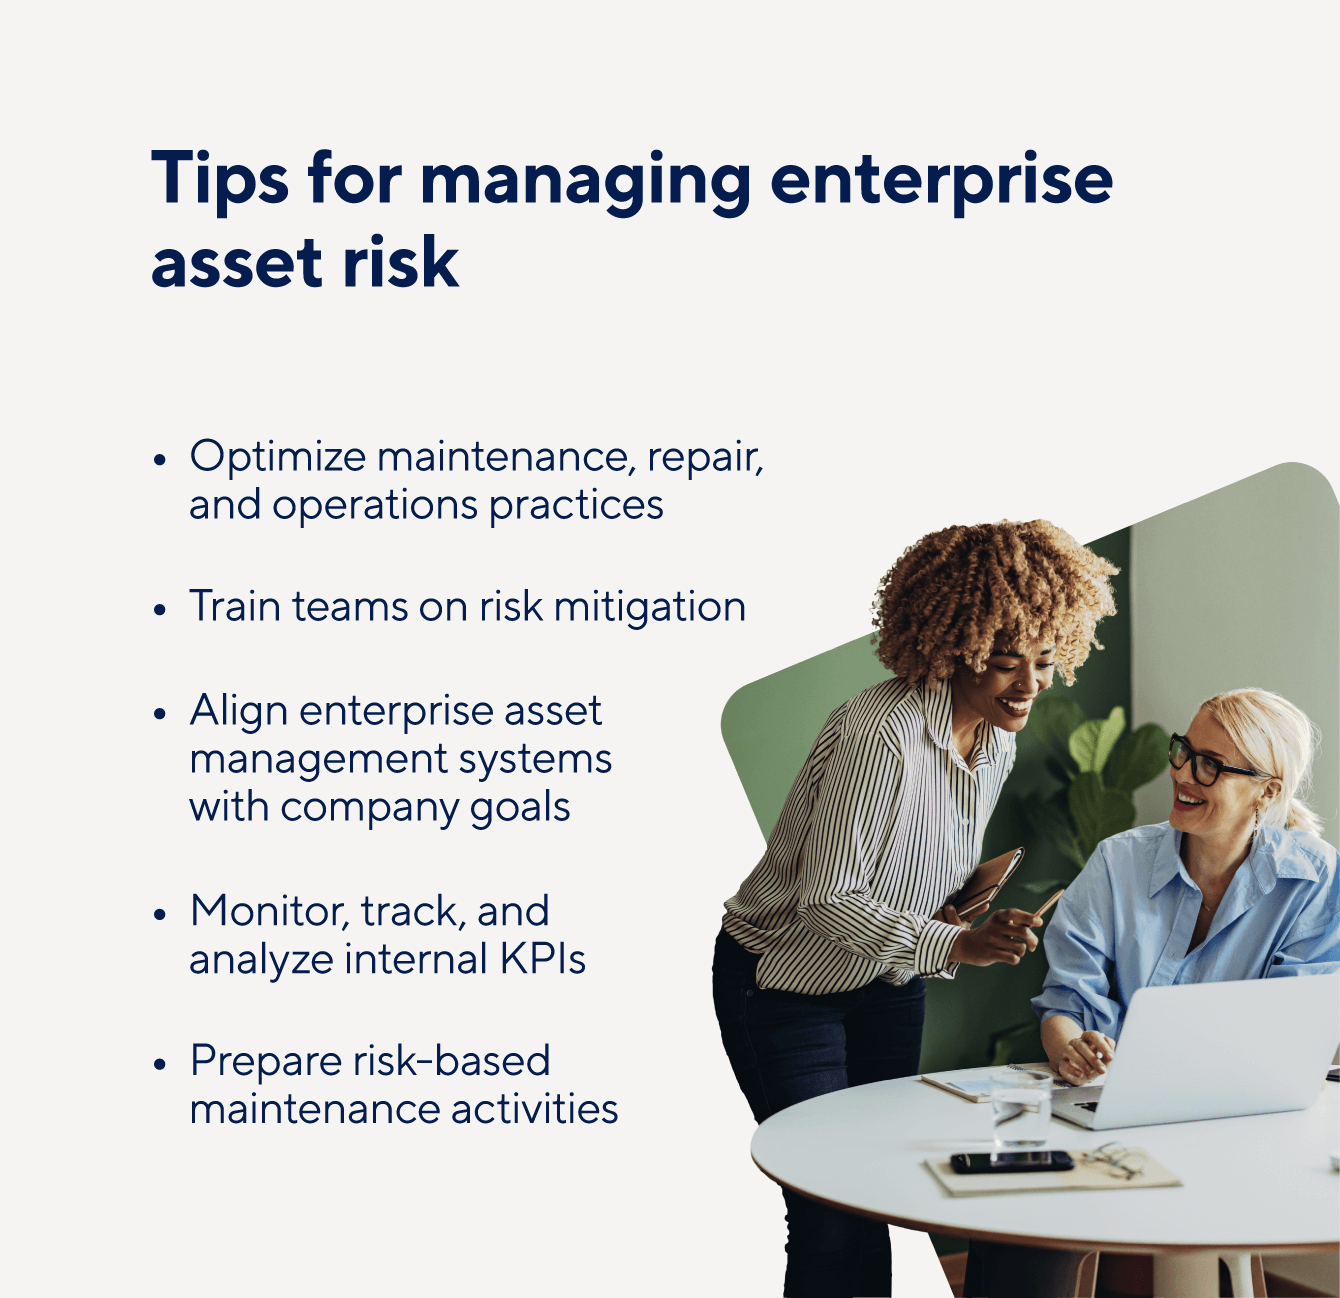 Tips for managing enterprise asset risk